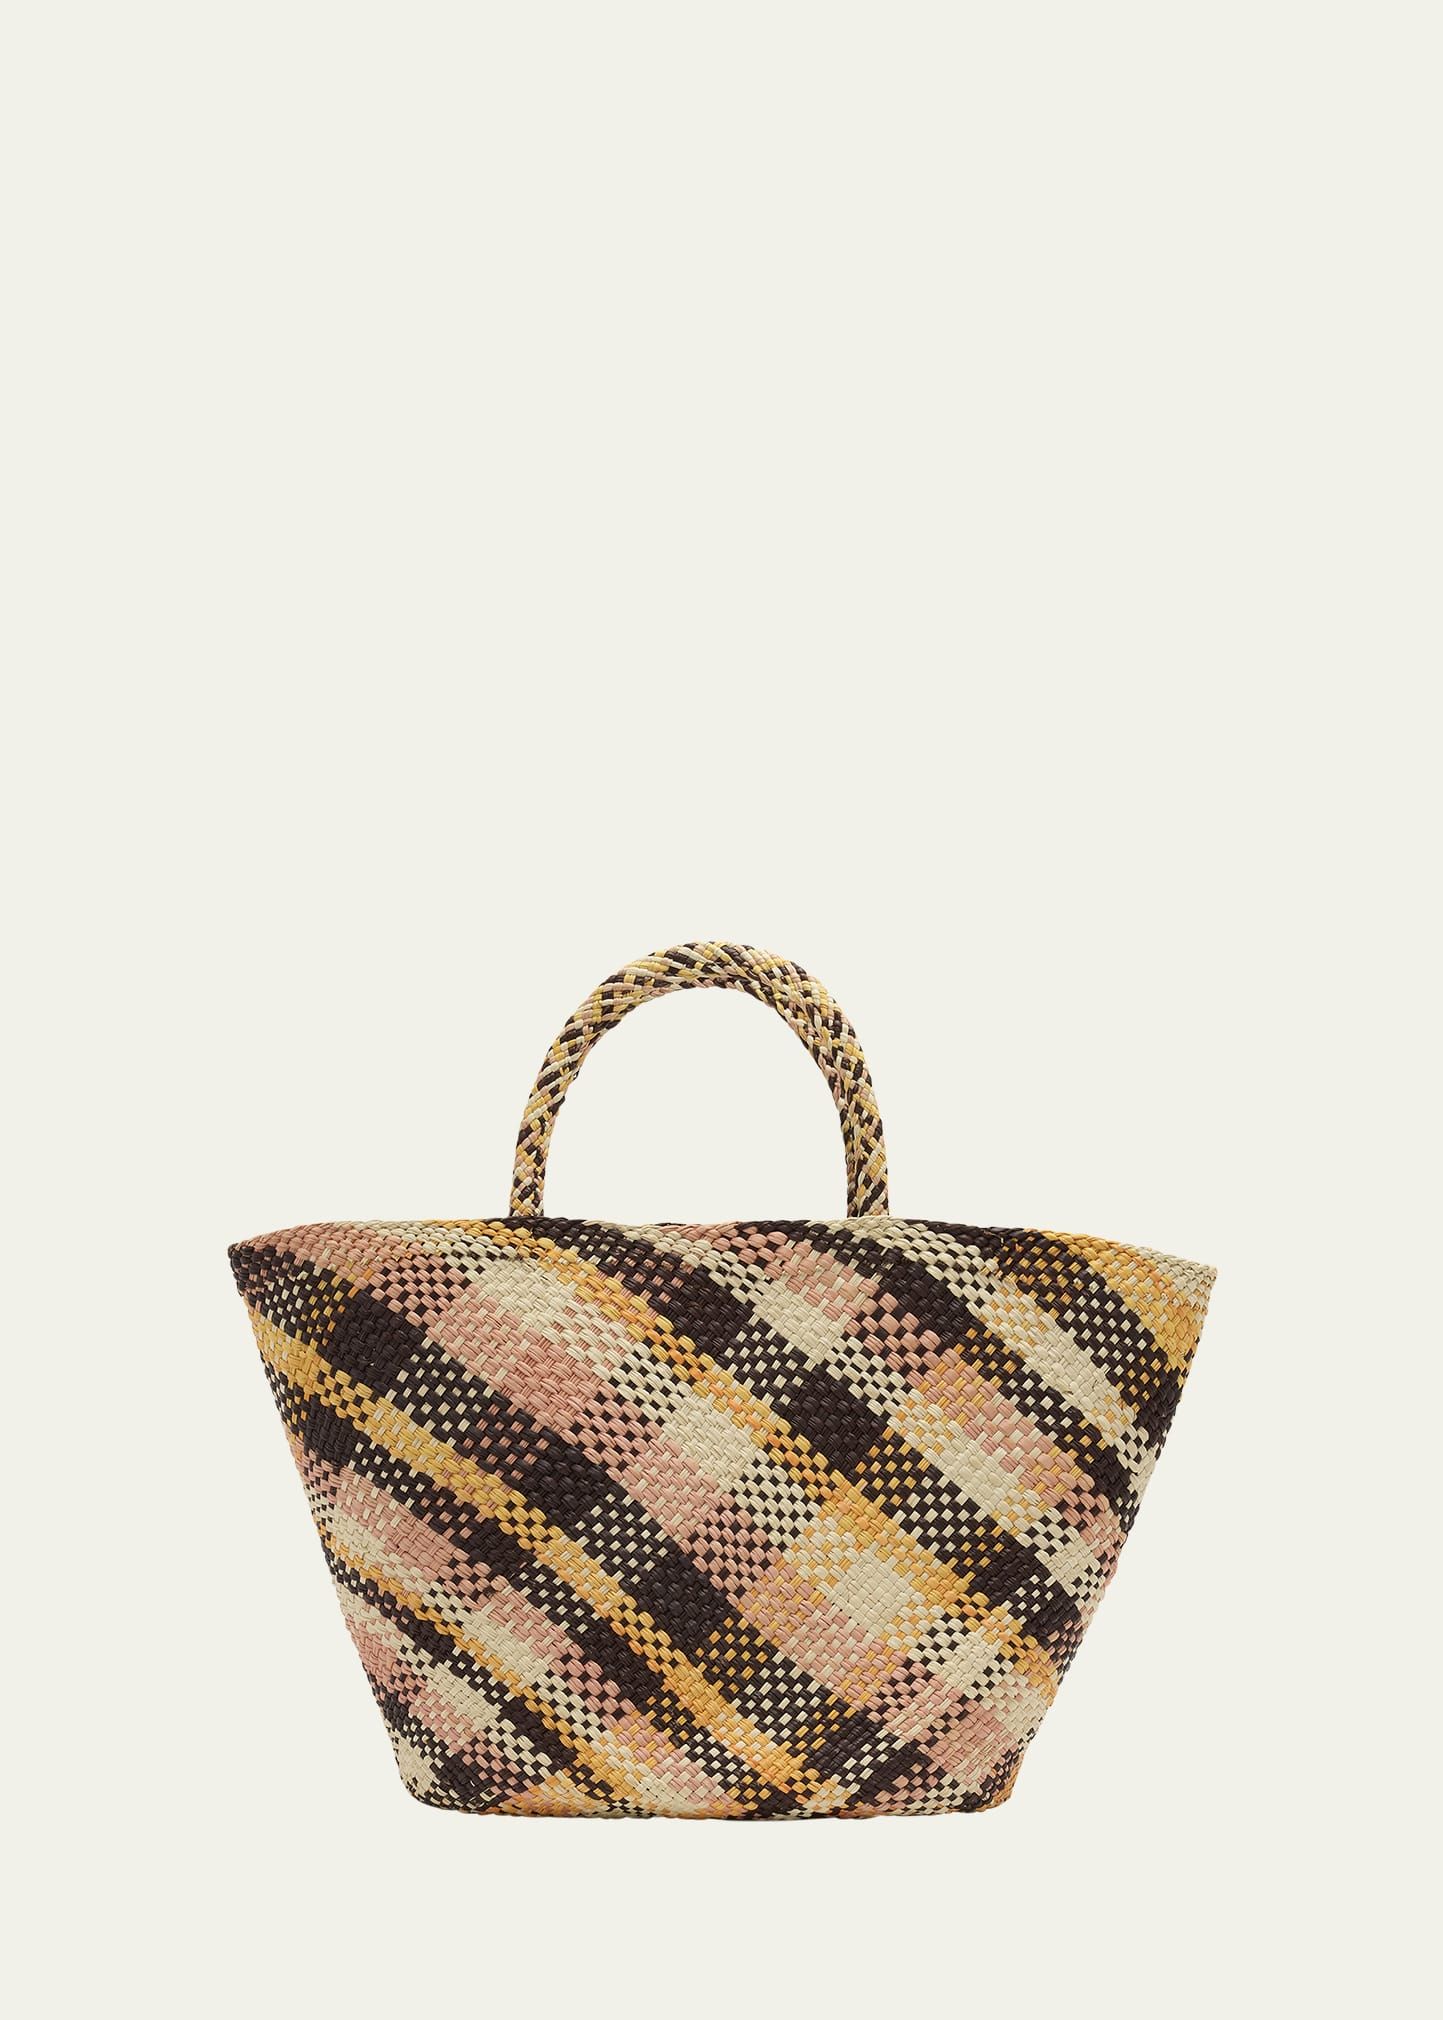 Ulla Johnson Mariana Small Plaid Basket Tote Bag | Bergdorf Goodman